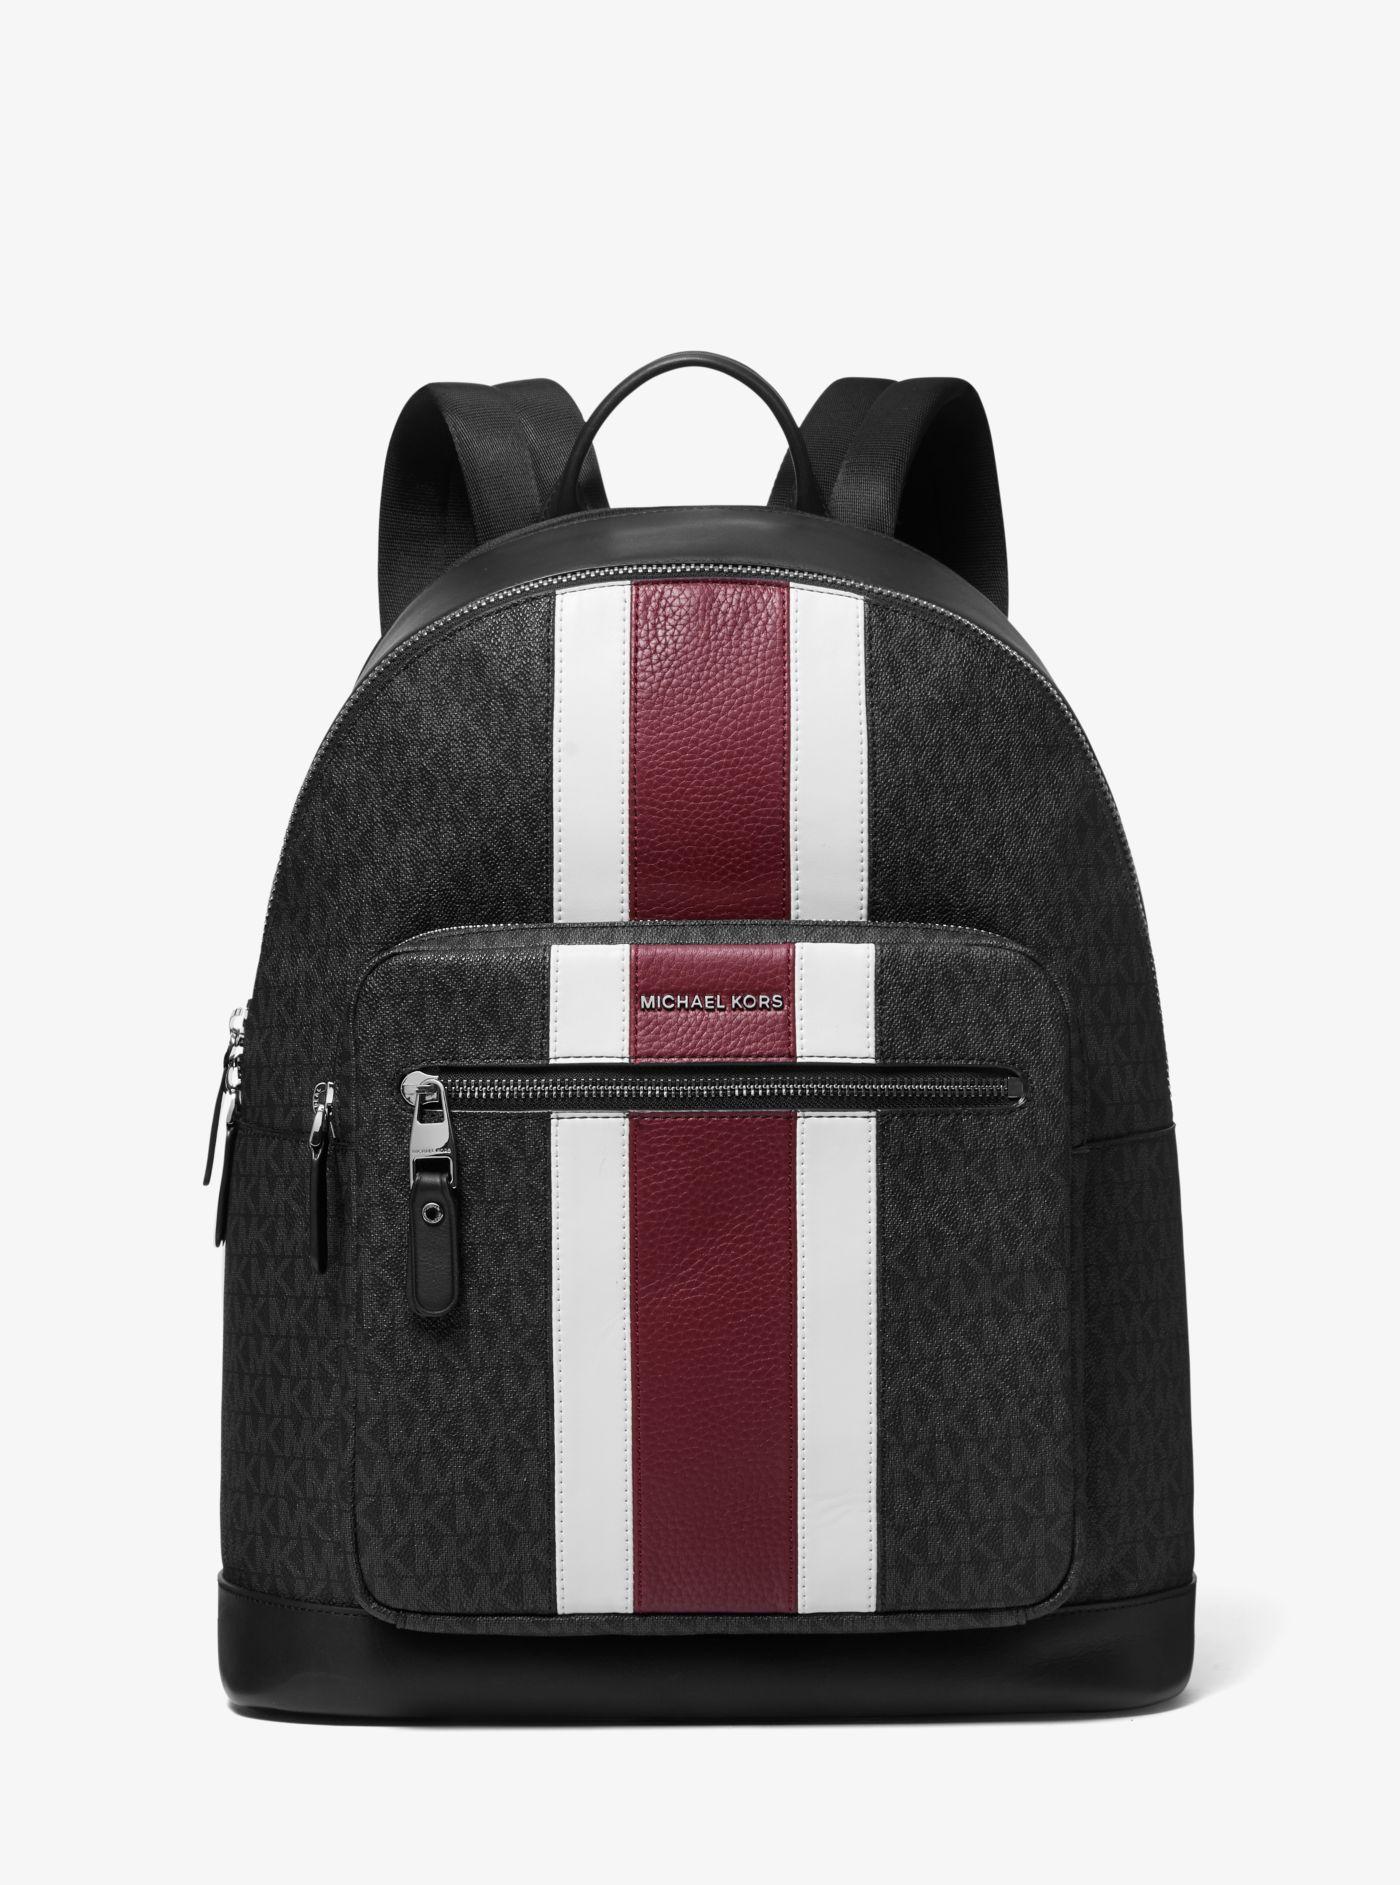 Michael Kors Canvas Hudson Logo Stripe Backpack in Black for Men - Lyst